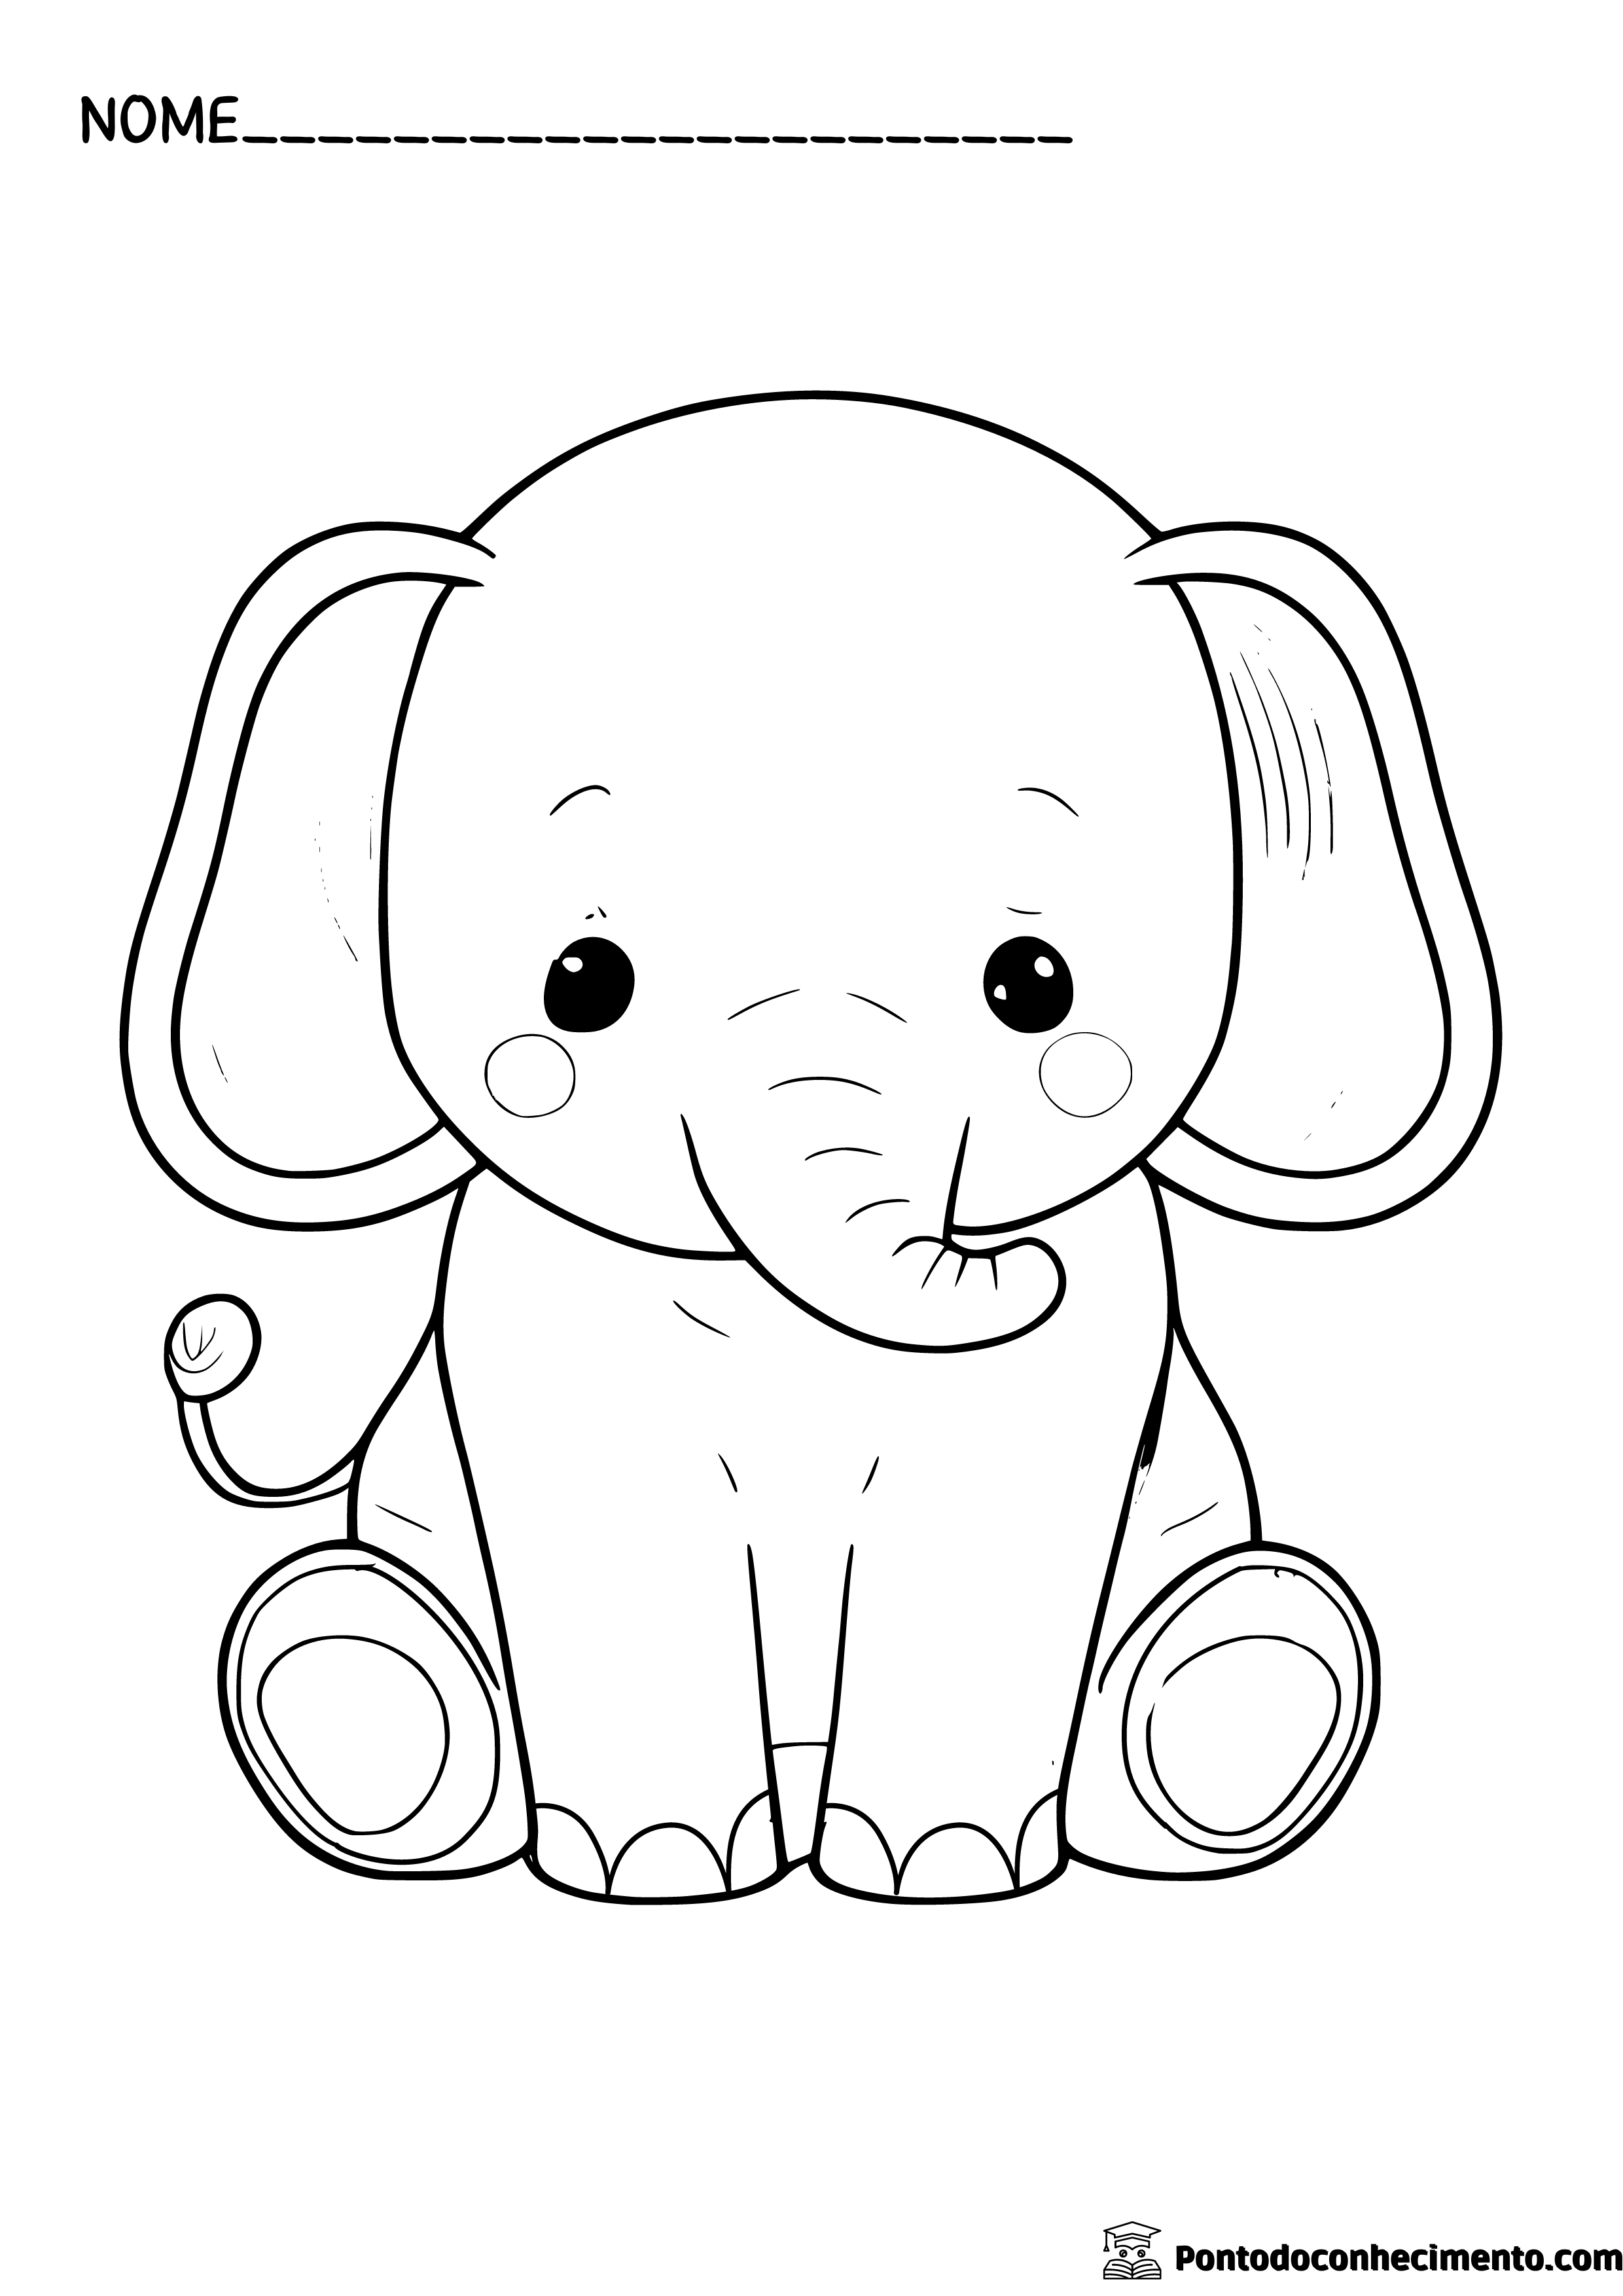 Desenhos infantis para colorir: elefante